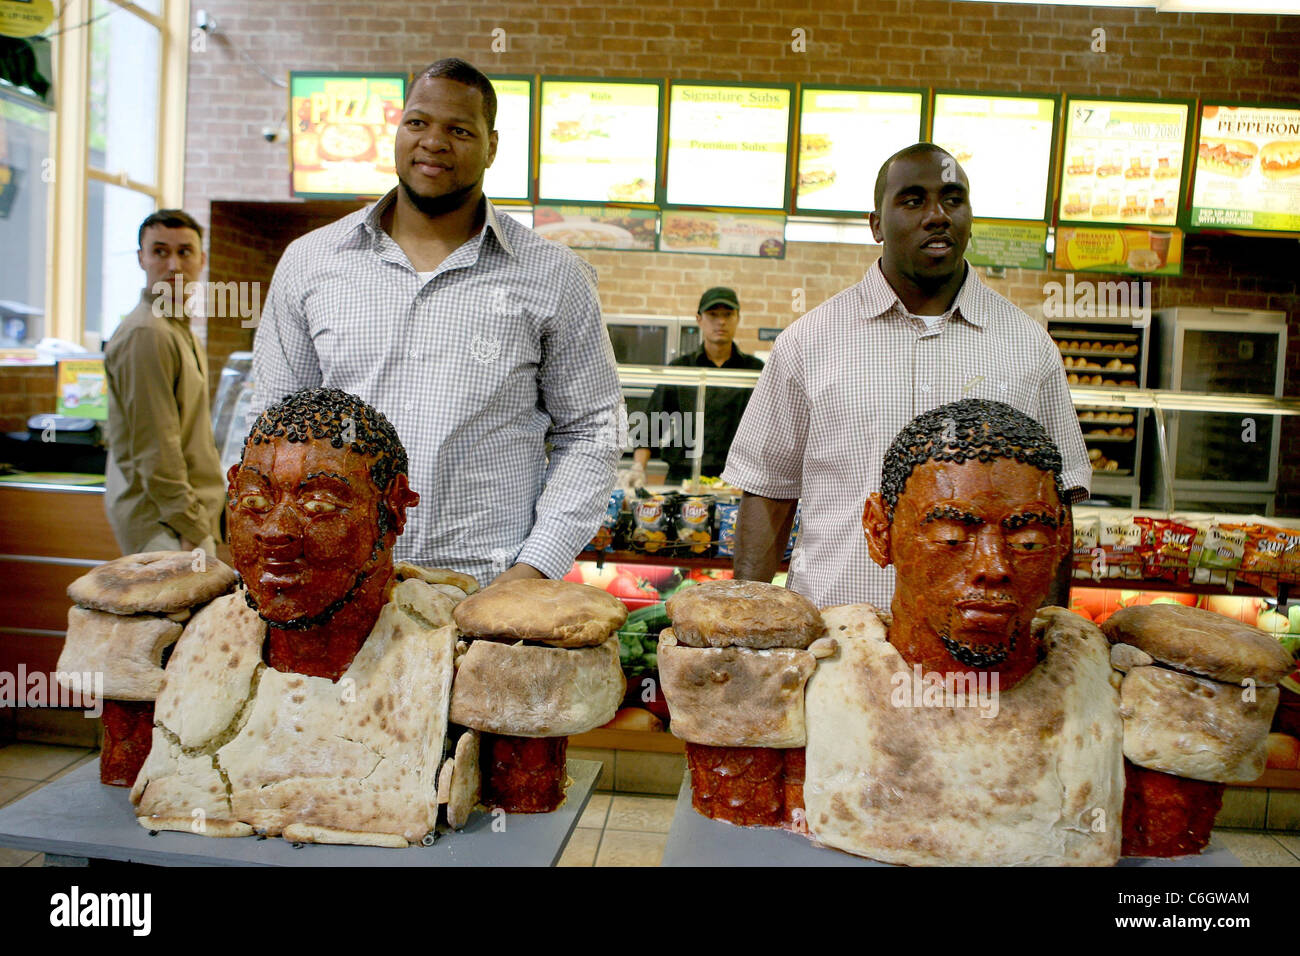 Top NFL Entwurf Perspektiven Ndamukong Suh und C. J. Spiller enthüllen ihre lebensgroße Büsten aus Peperoni bei Subway Sandwich gemacht Stockfoto